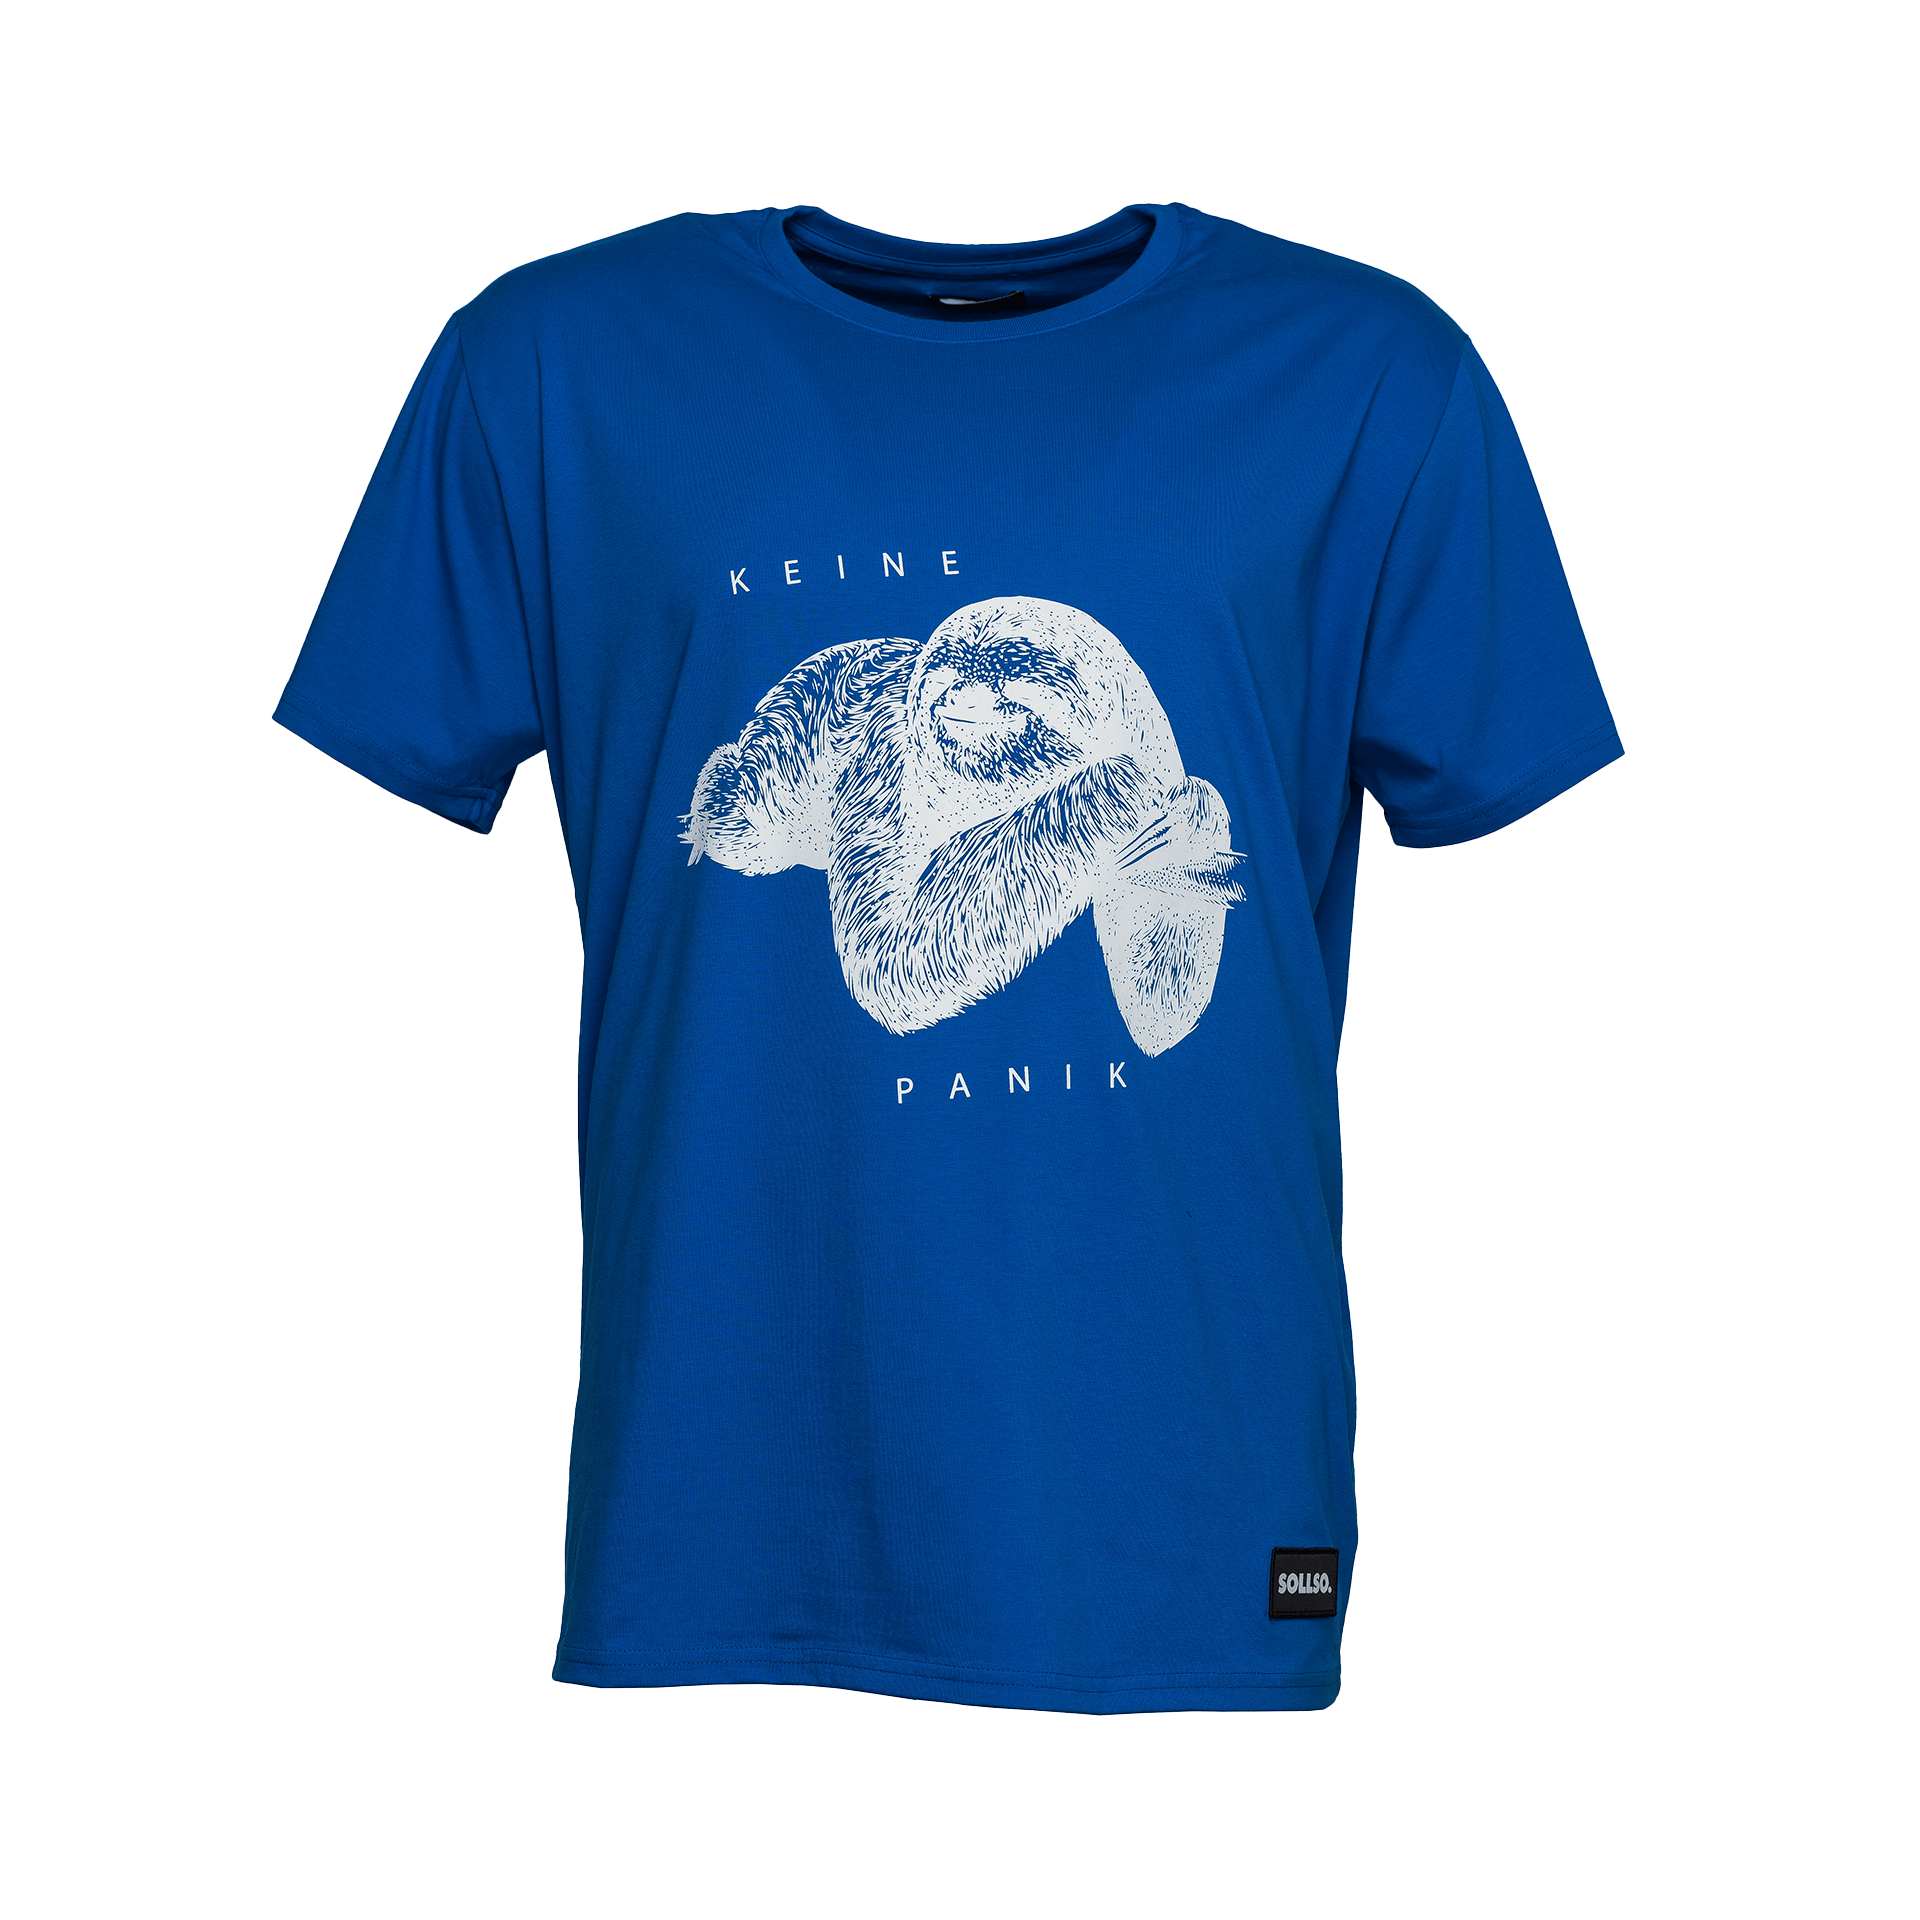 Sollso T-Shirt blau mit Faultieraufdruck und Text Keine Panik